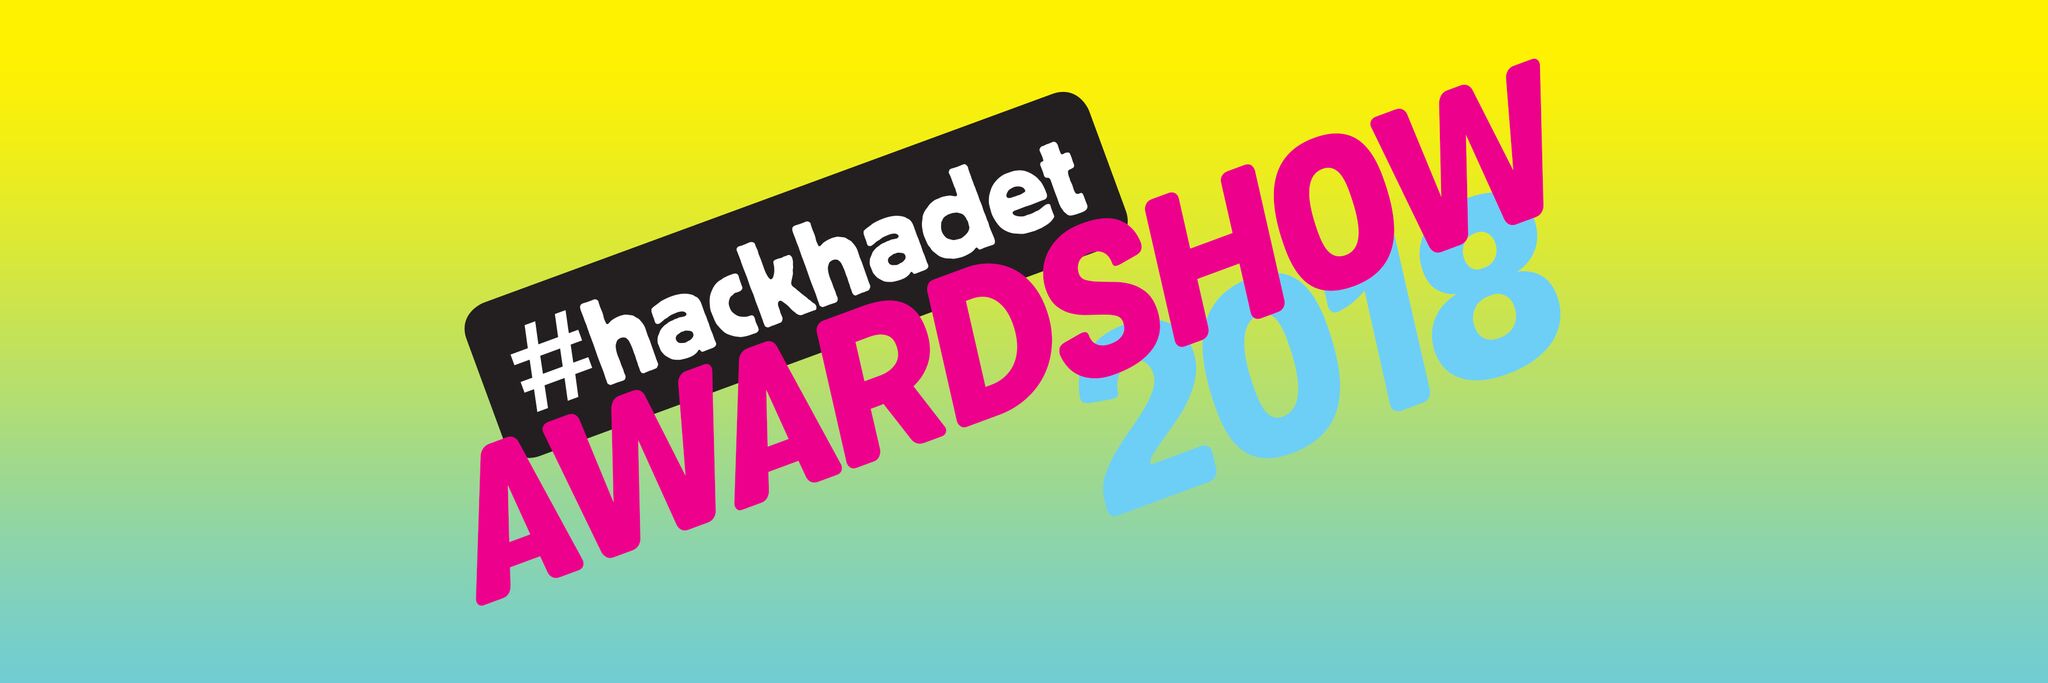 #hackhadet Awardshow 2018